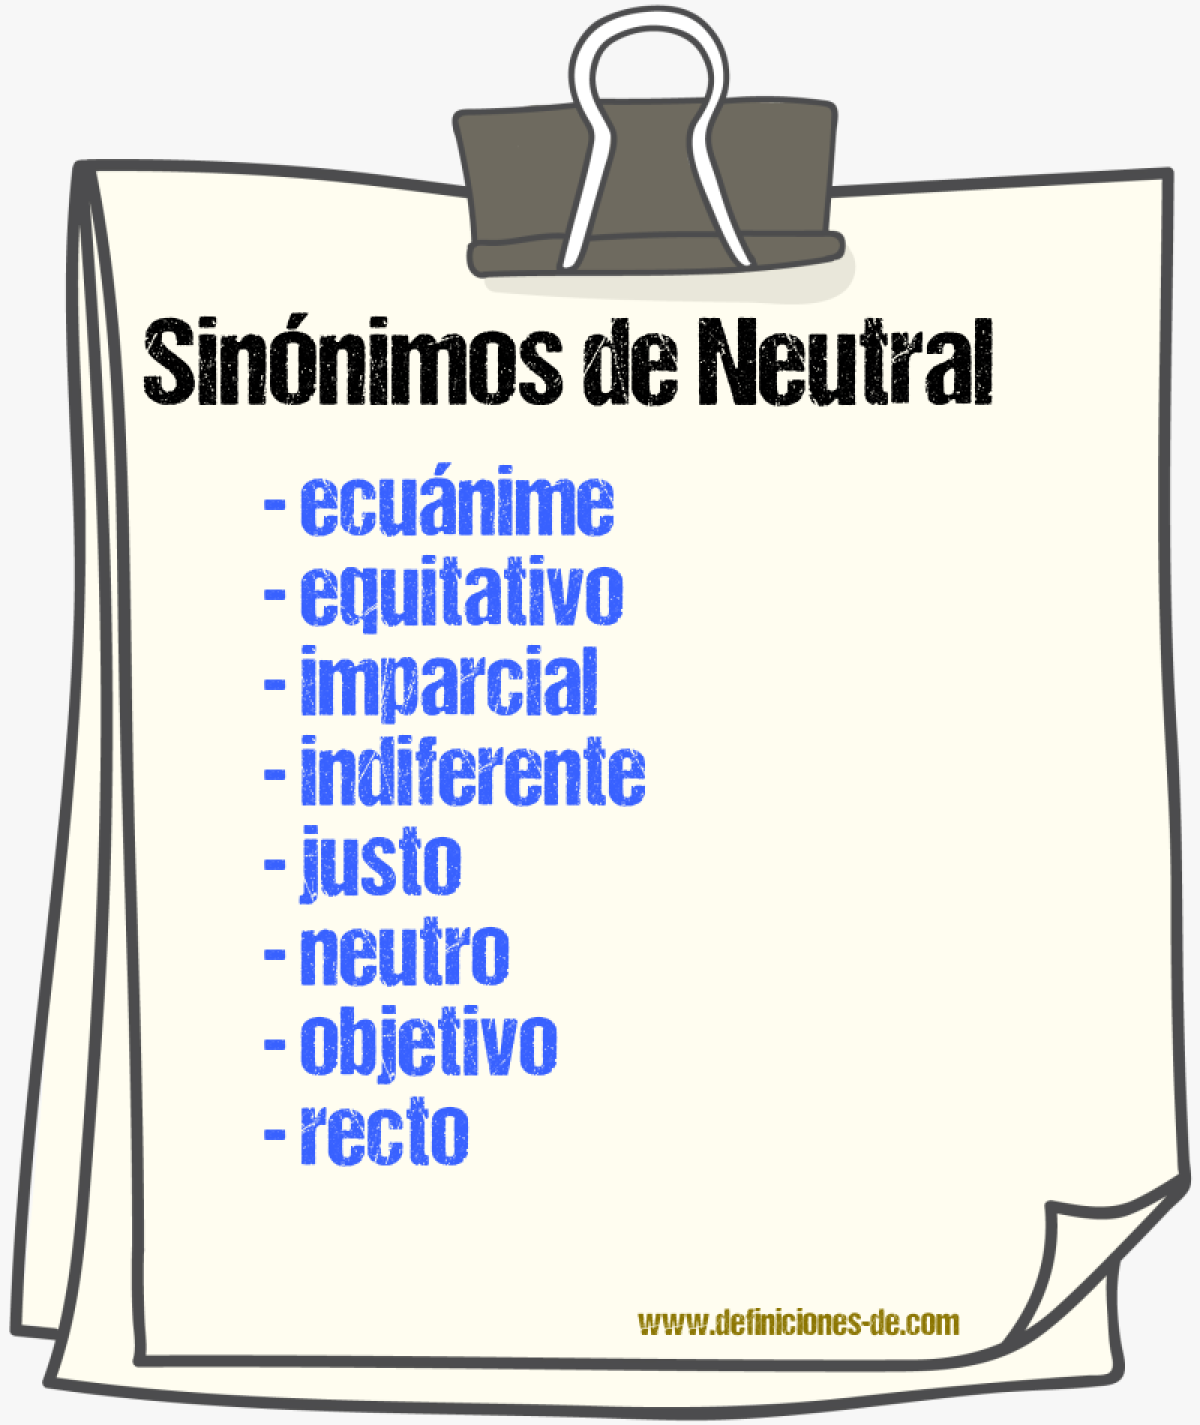 Sinónimos de neutral